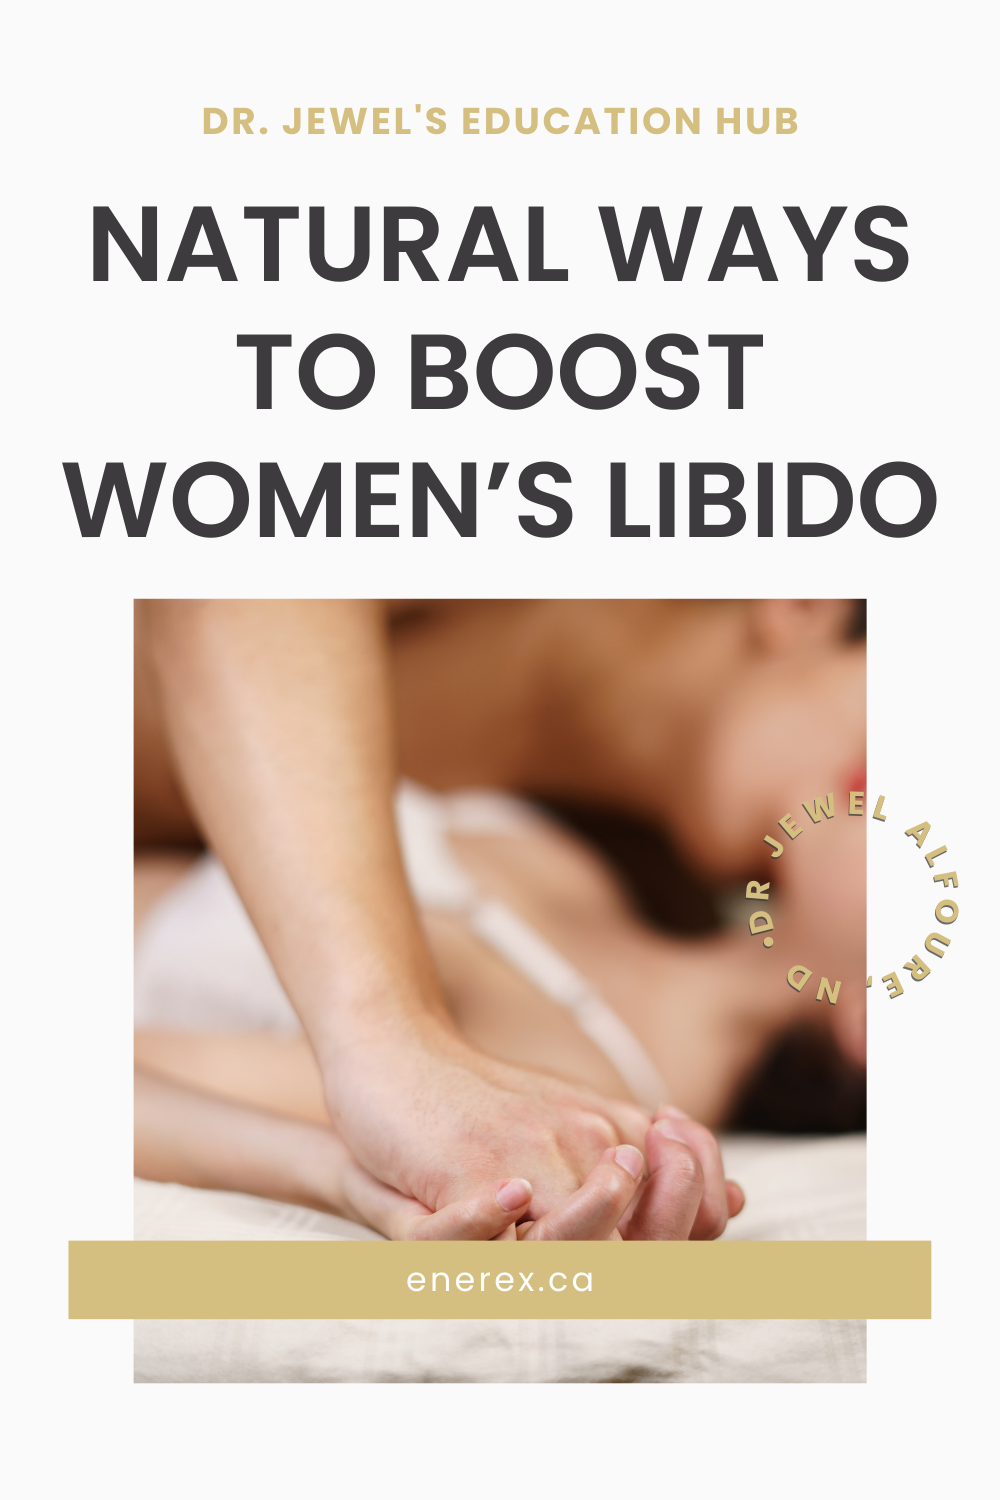 Libido Women - Complément alimentaire pour stimuler le désir féminin